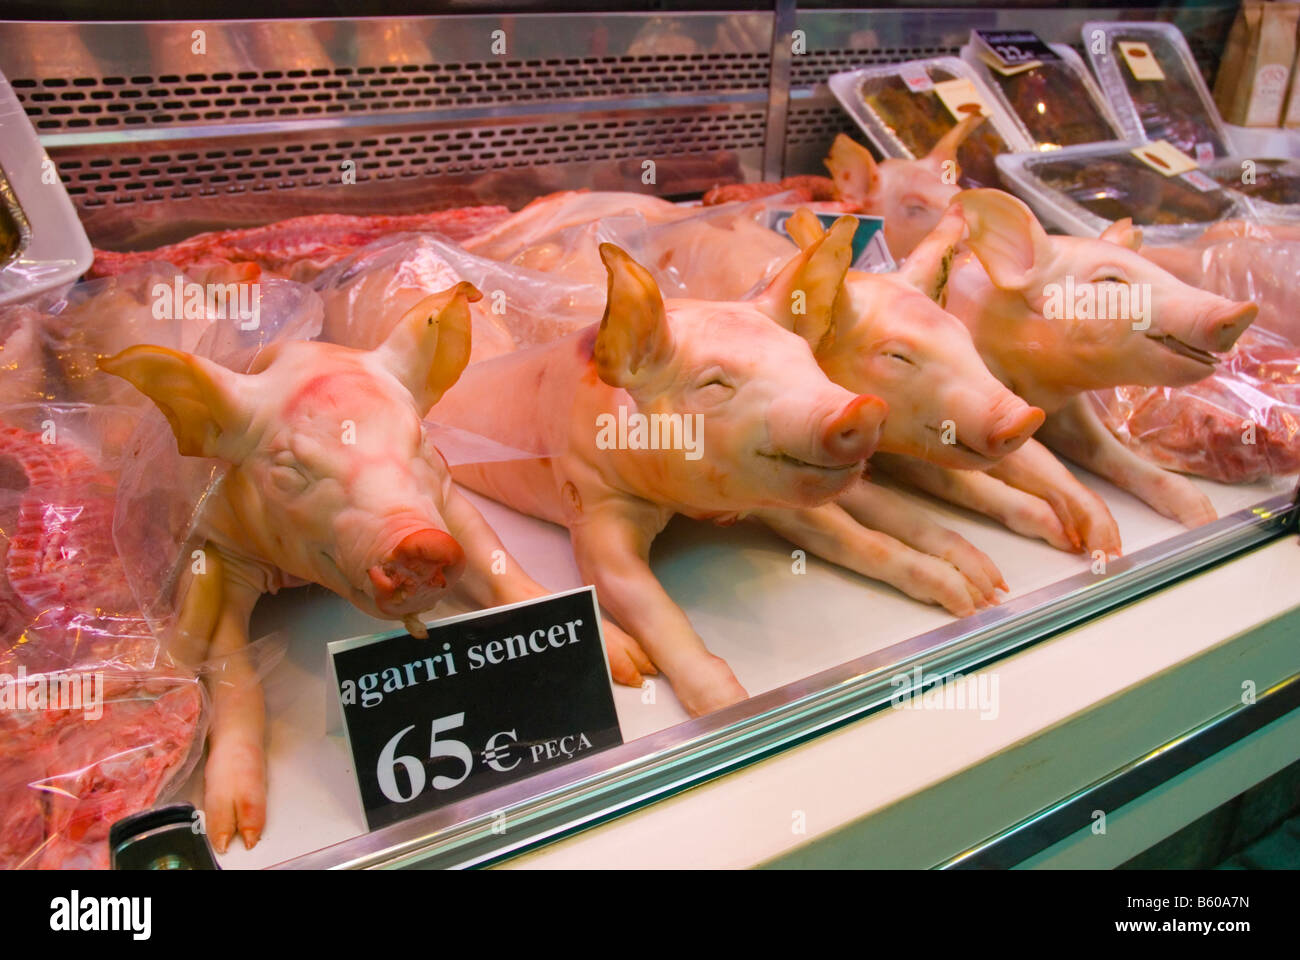 Pork at La Boqueria market in Barcelona Spain Europe Stock Photo